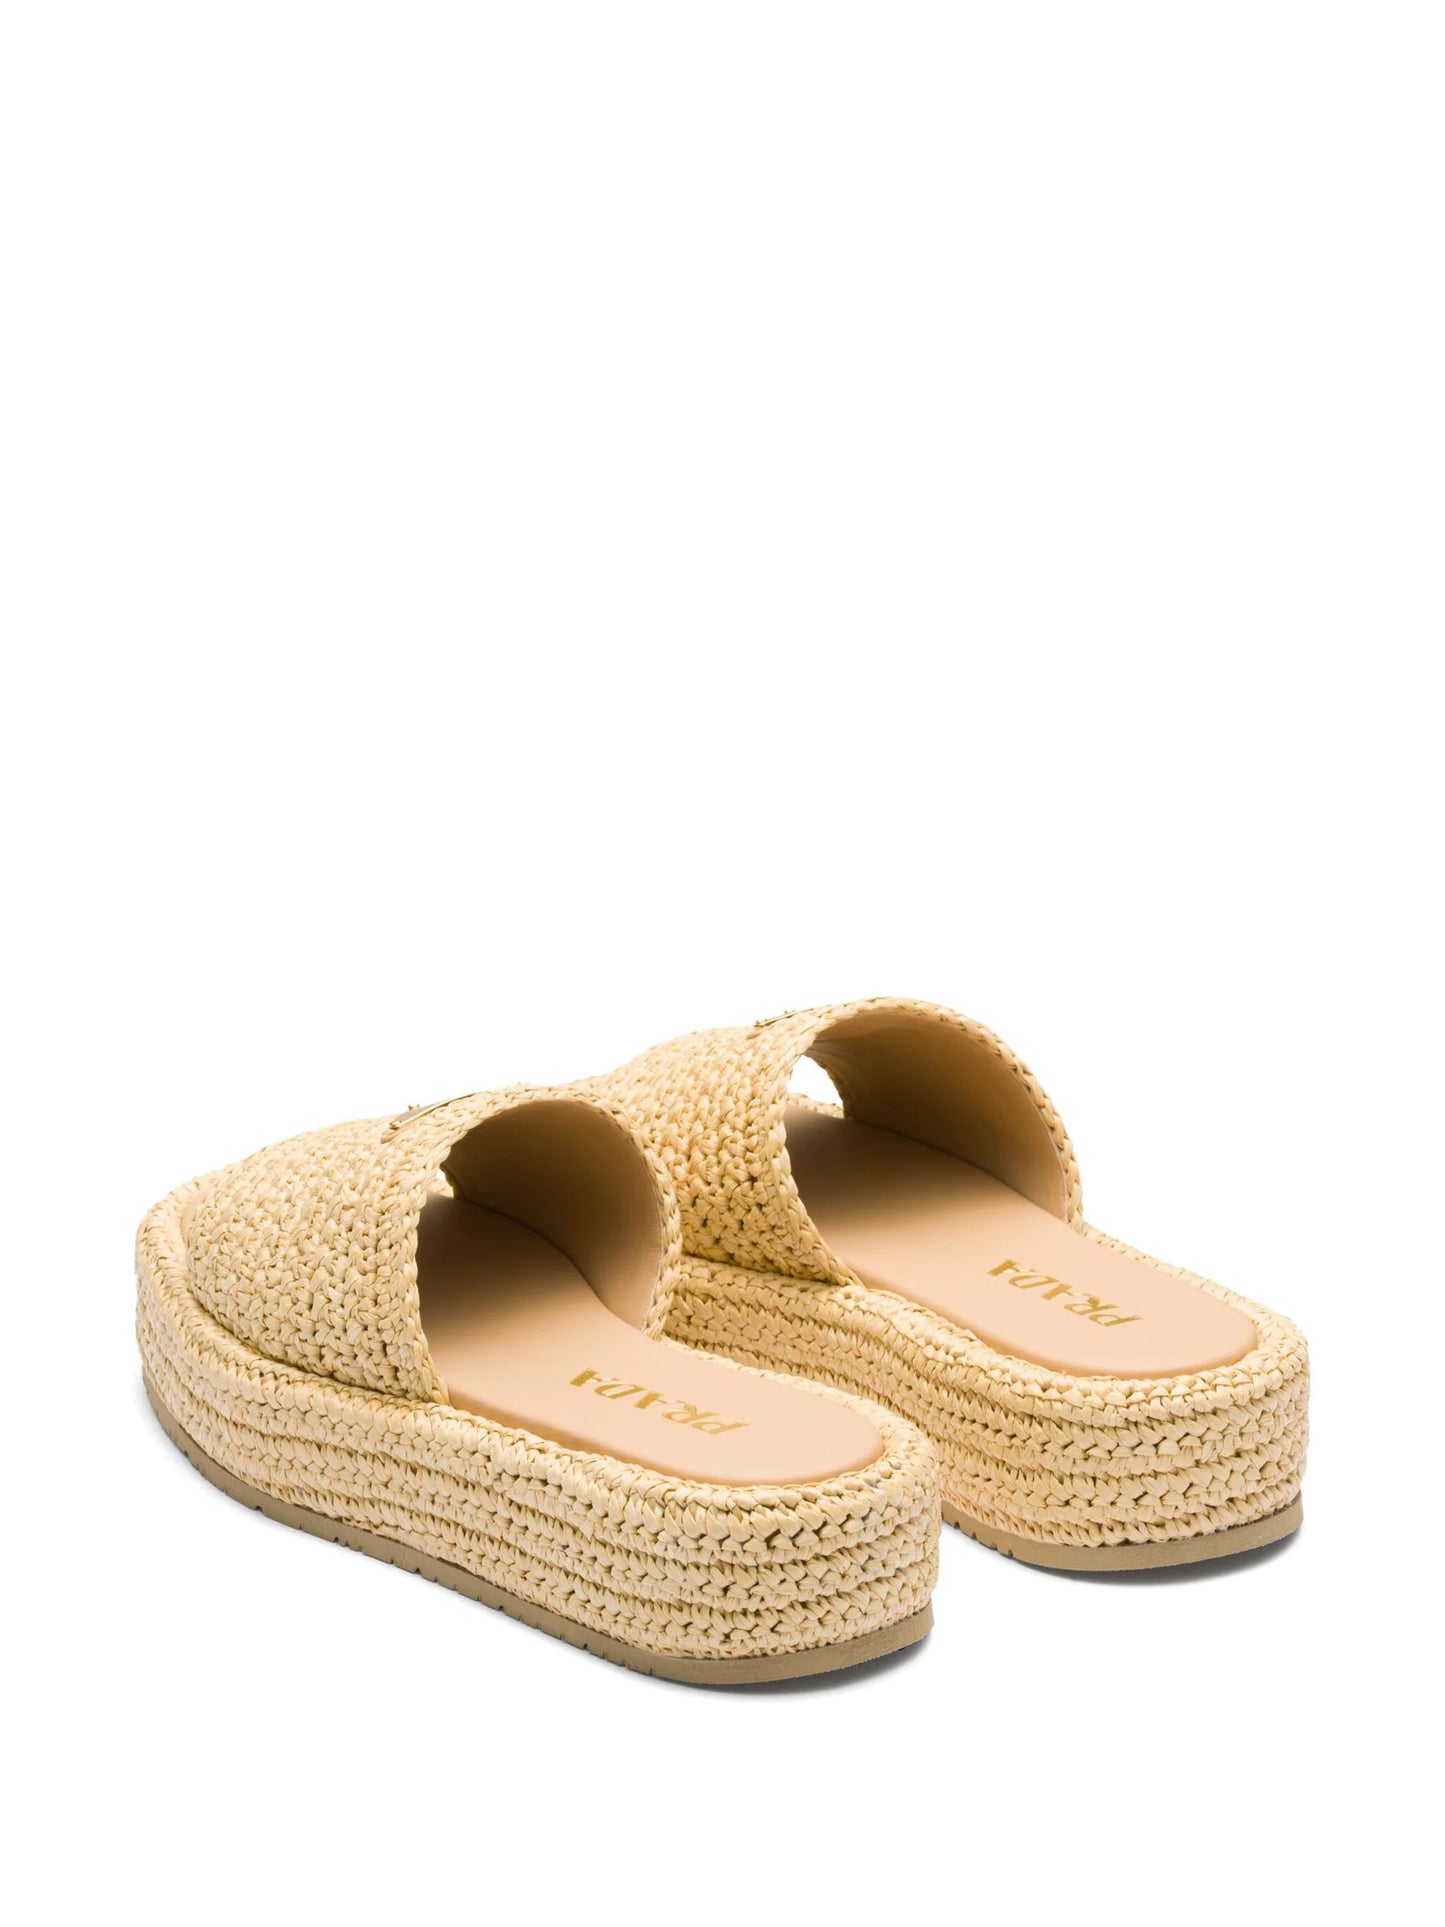 Womens Crochet Sandals